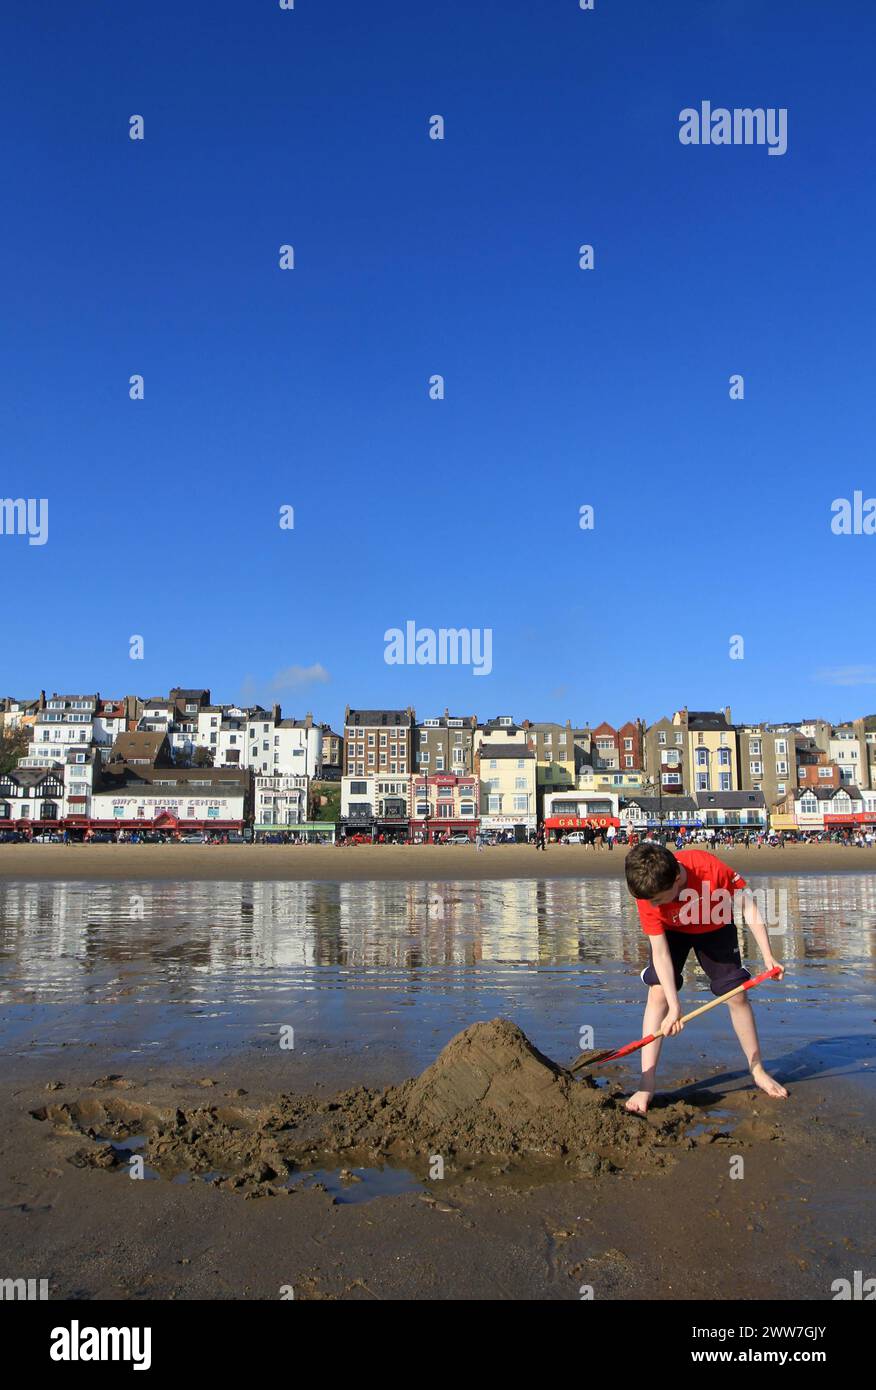 16/10/11. Umgeben von blauem Himmel, baut die zehnjährige Finley am Strand von Scarborough eine Zuflucht... alle Rechte vorbehalten. F Stopp P Stockfoto